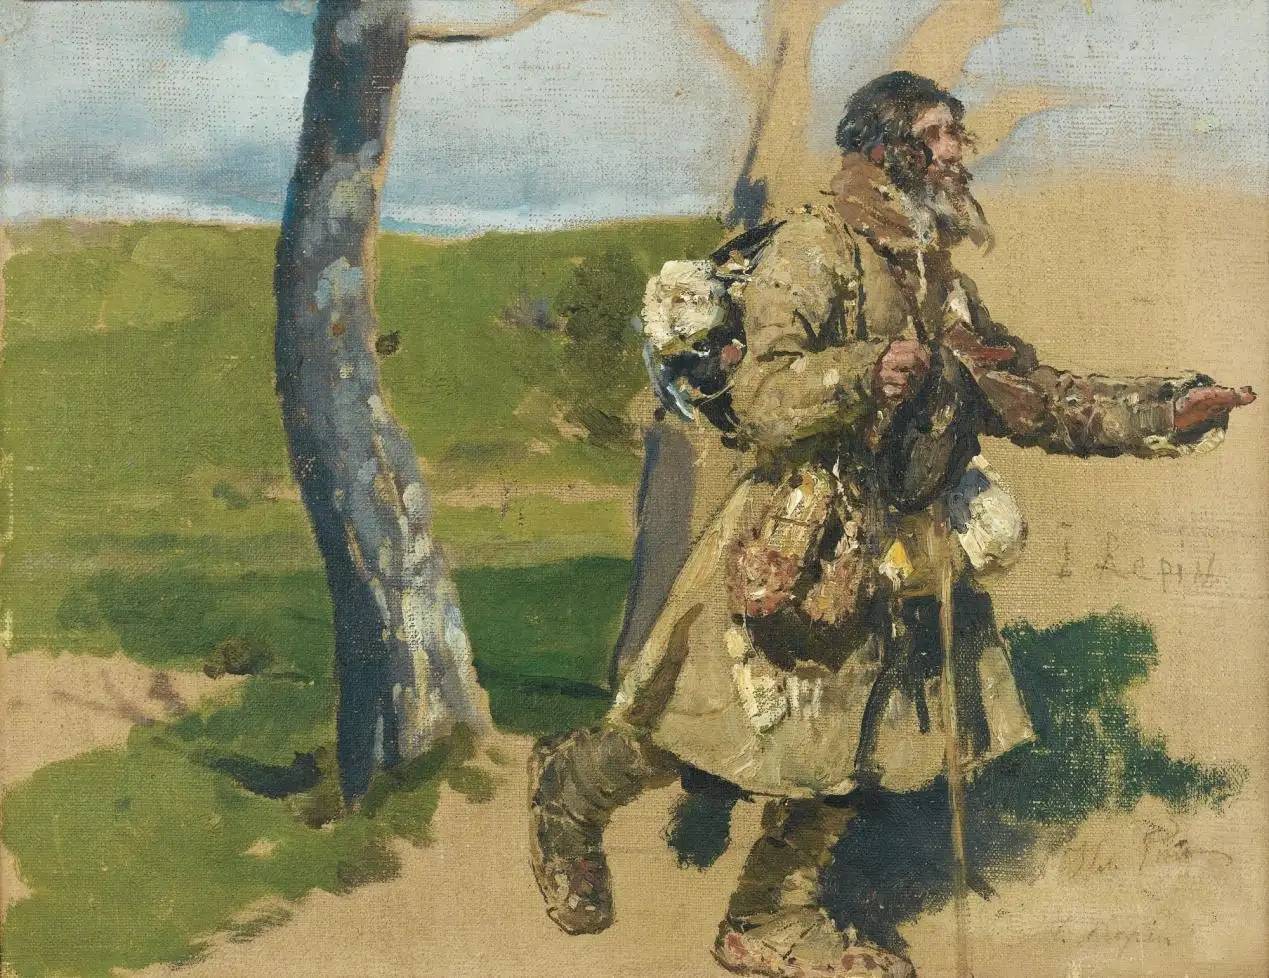 再读屠格涅夫的《猎人笔记》:专制和农奴制下,农民的压迫和剥削